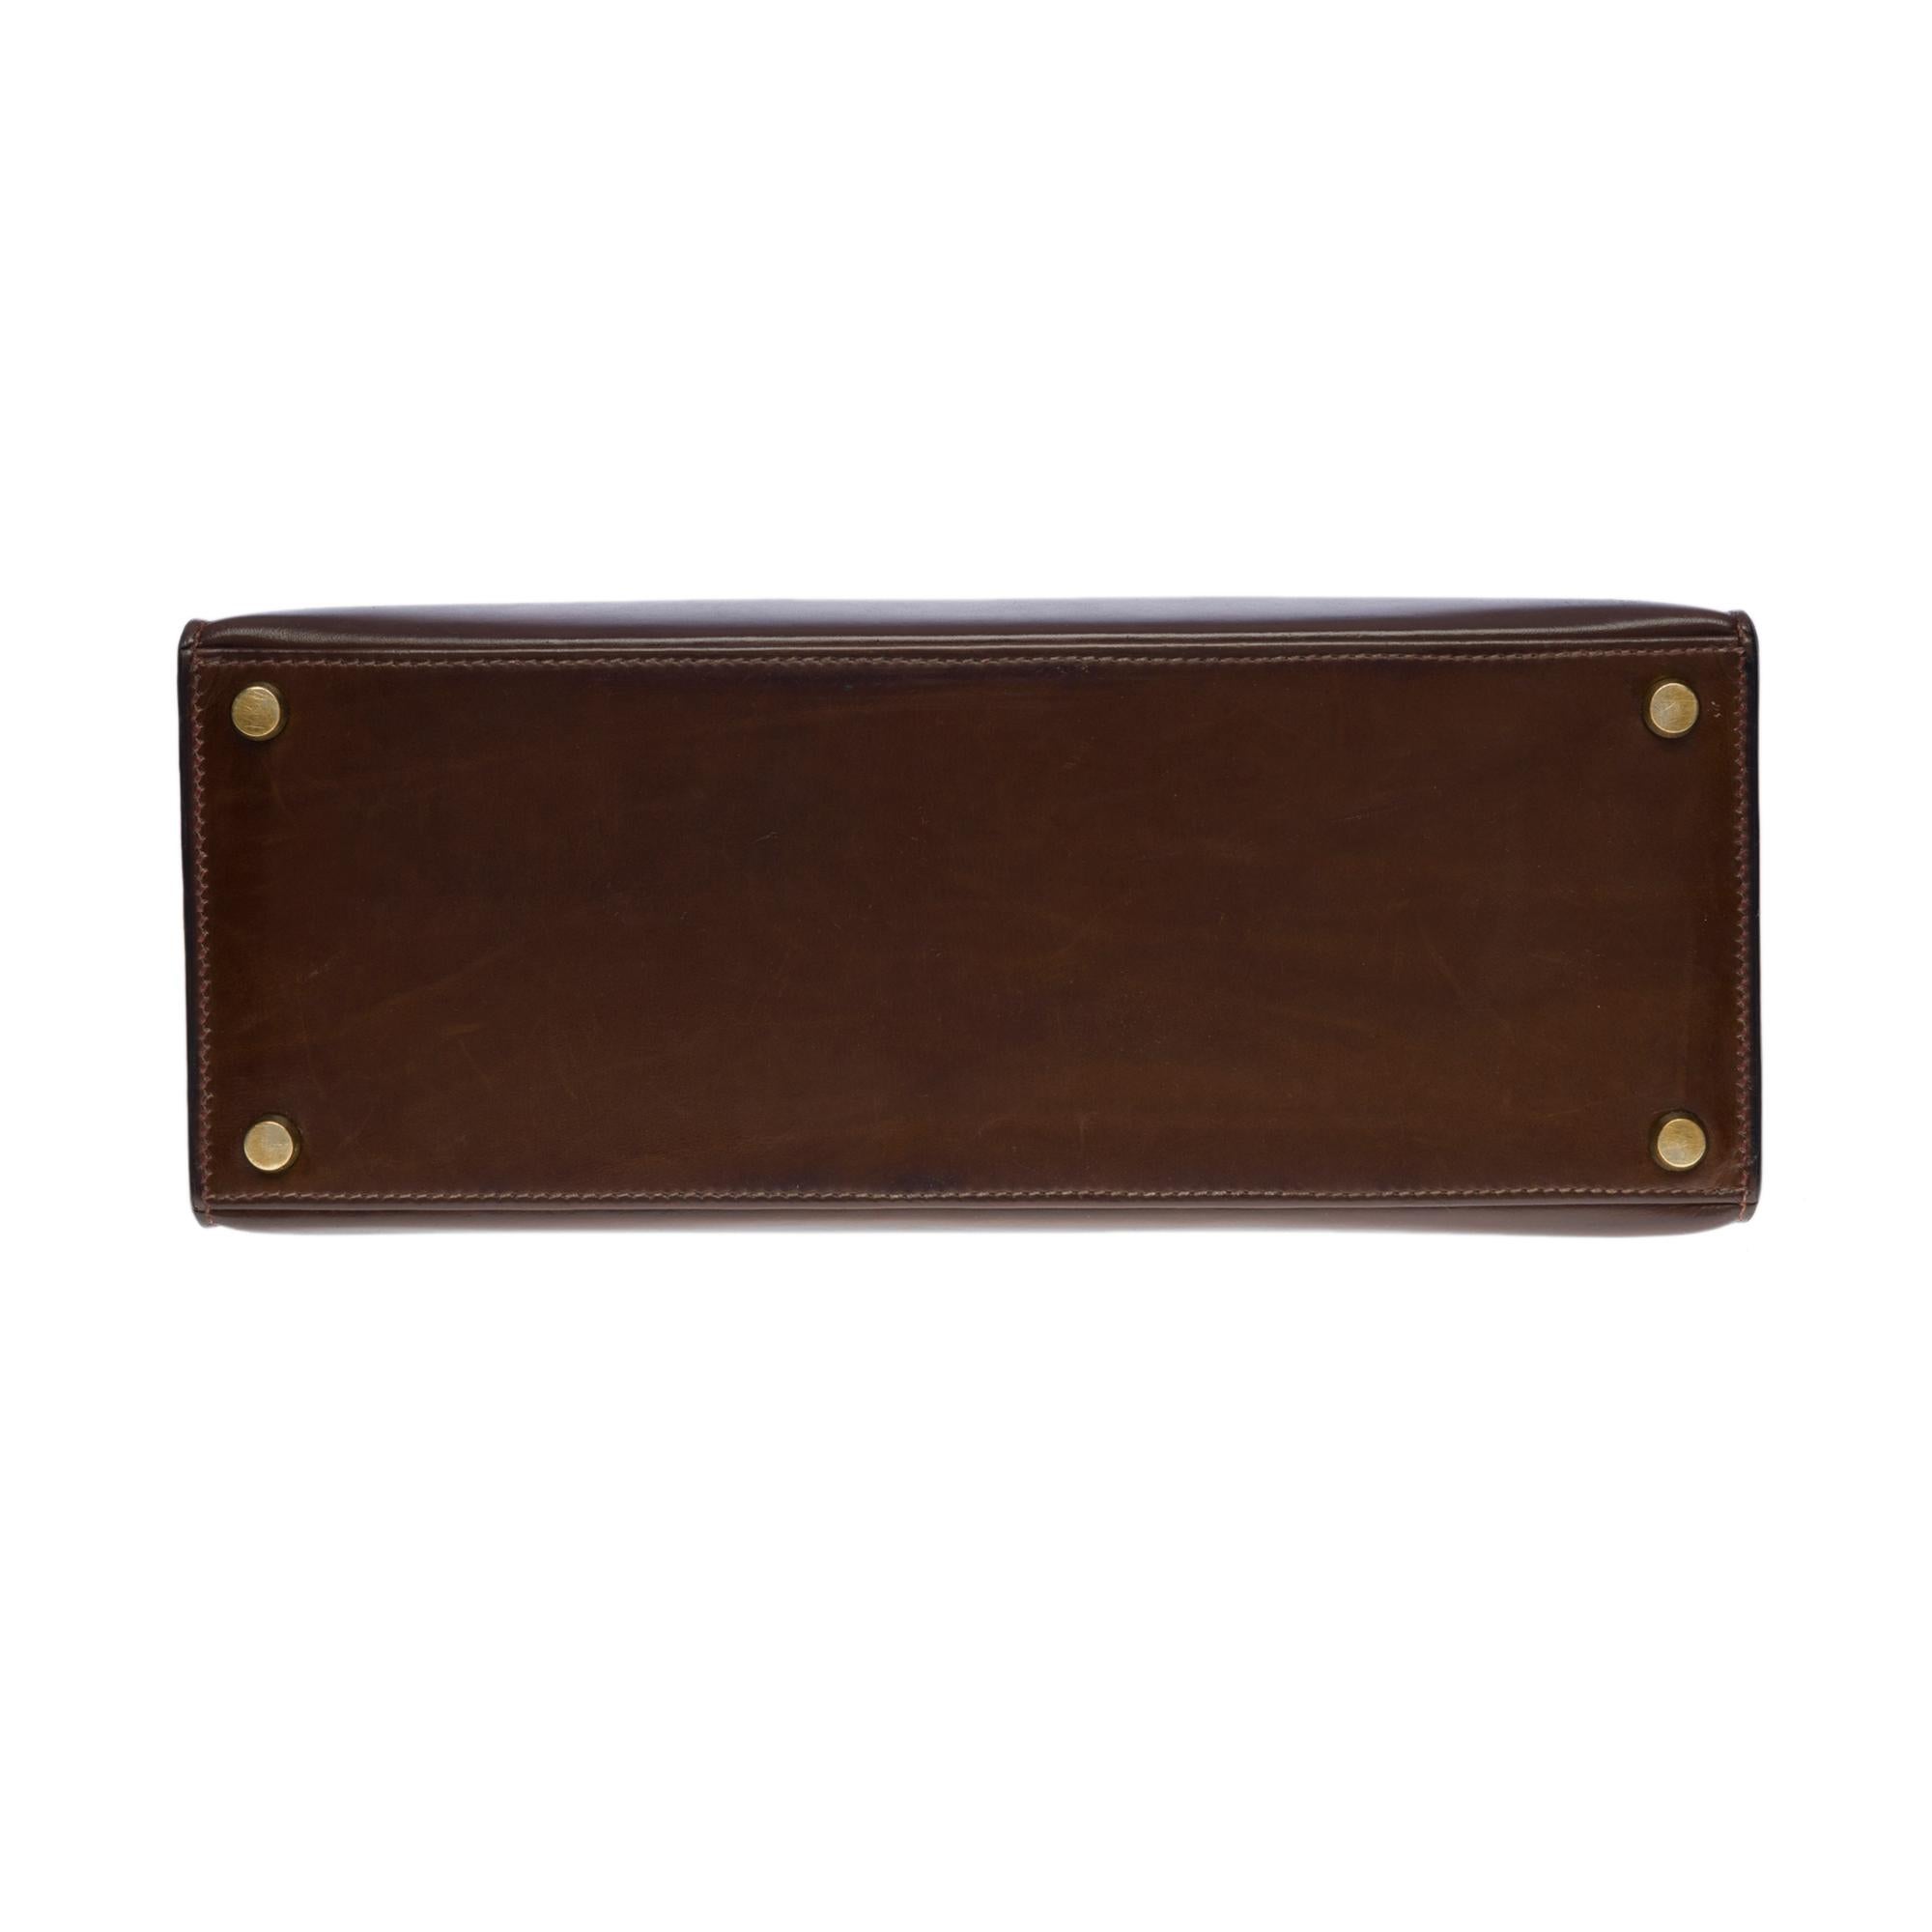 Amazing Hermes Kelly 28 sellier handbag in brown Calf leather, GHW 1